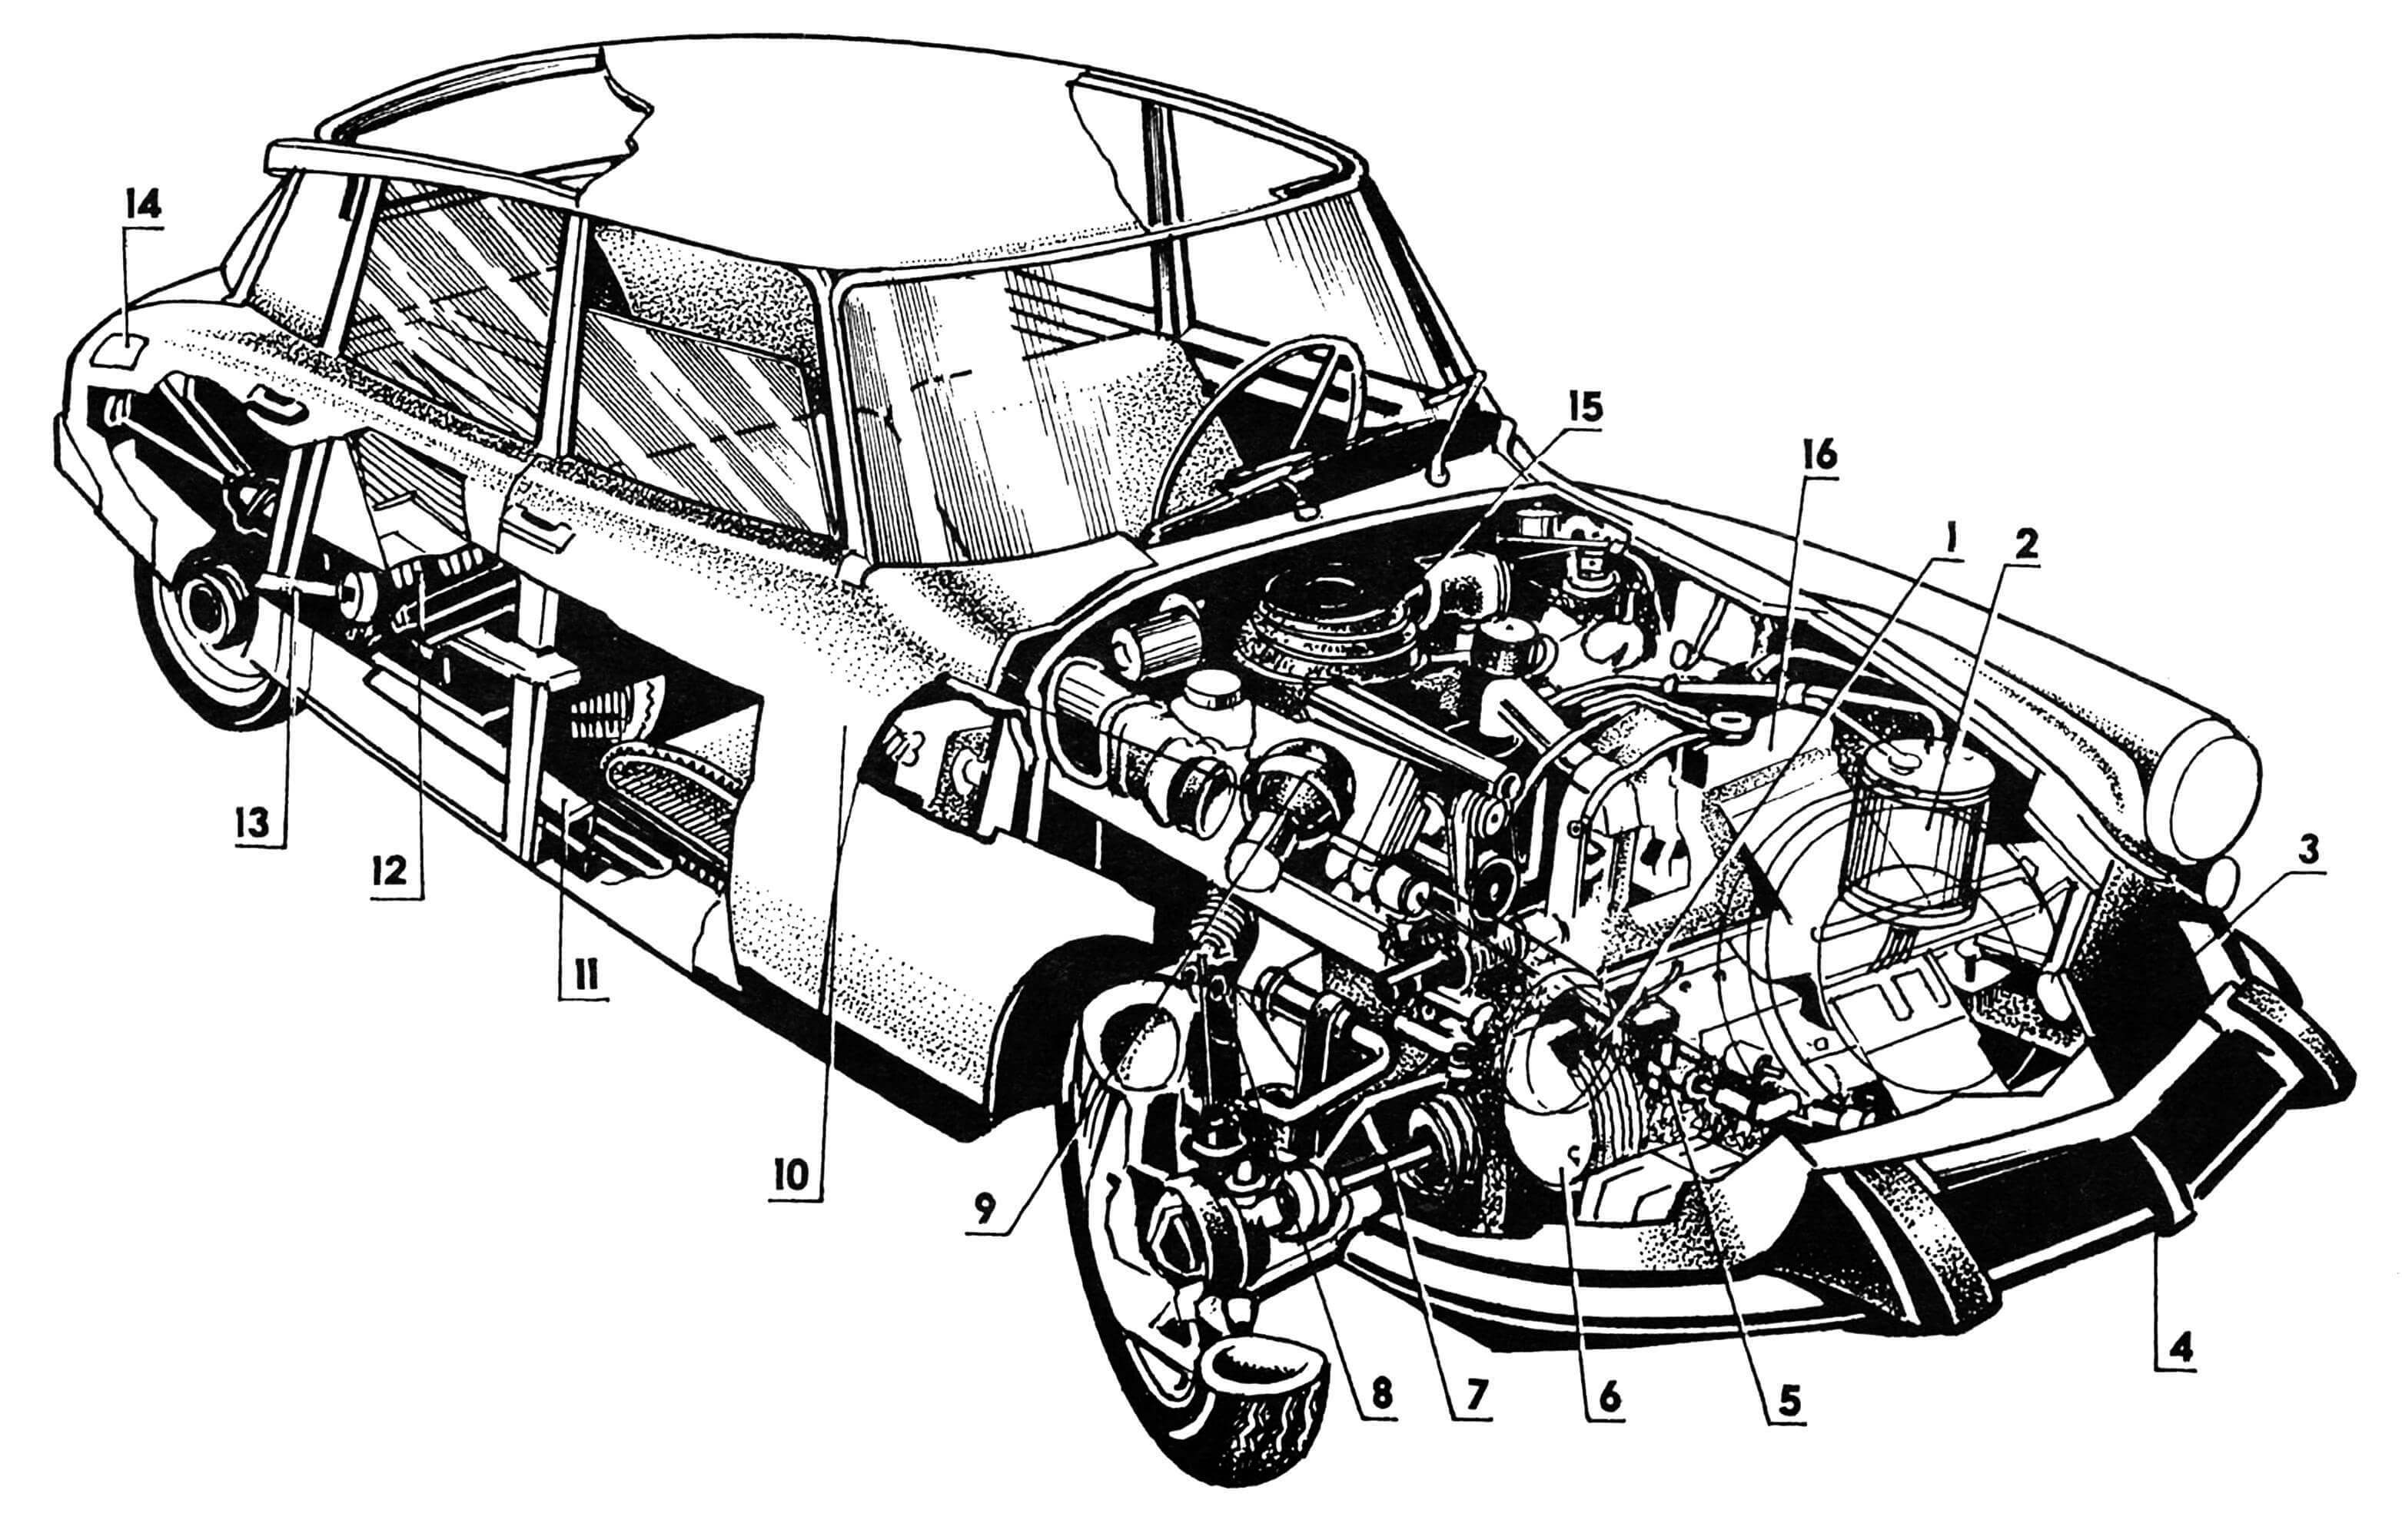 Компоновка автомобиля: 1 — блок тормозных механизмов; 2 — емкость для гидрожидкости; 3 — капот; 4 — облицовка радиатора; 5 — цилиндр тормозной; 6 — суппорт тормозной; 7 — полуось; 8 — крепление гидропневматического резервуара; 9 — резервуар гидропневматический; 10 — кузов; 11— порог; 12 — торсион; 13 — тяга подвески заднего колеса, продольная; 14 — лючок горловины бензобака; 15 — фильтр воздушный; 16 — радиатор.